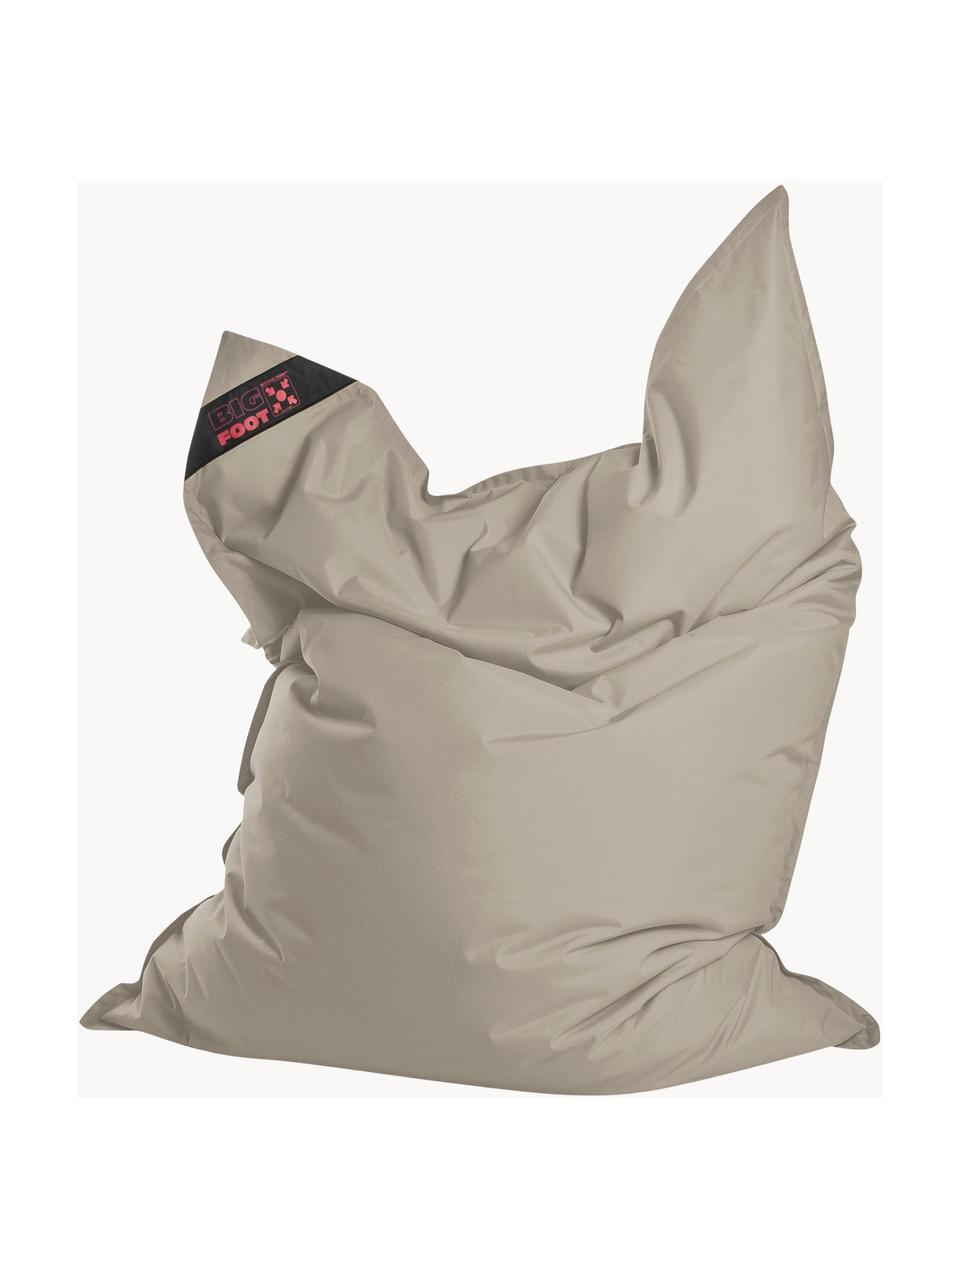 Puf saco grande Scuba, Tapizado: 100% polipropileno, resis, Beige, An 130 x Al 170 cm